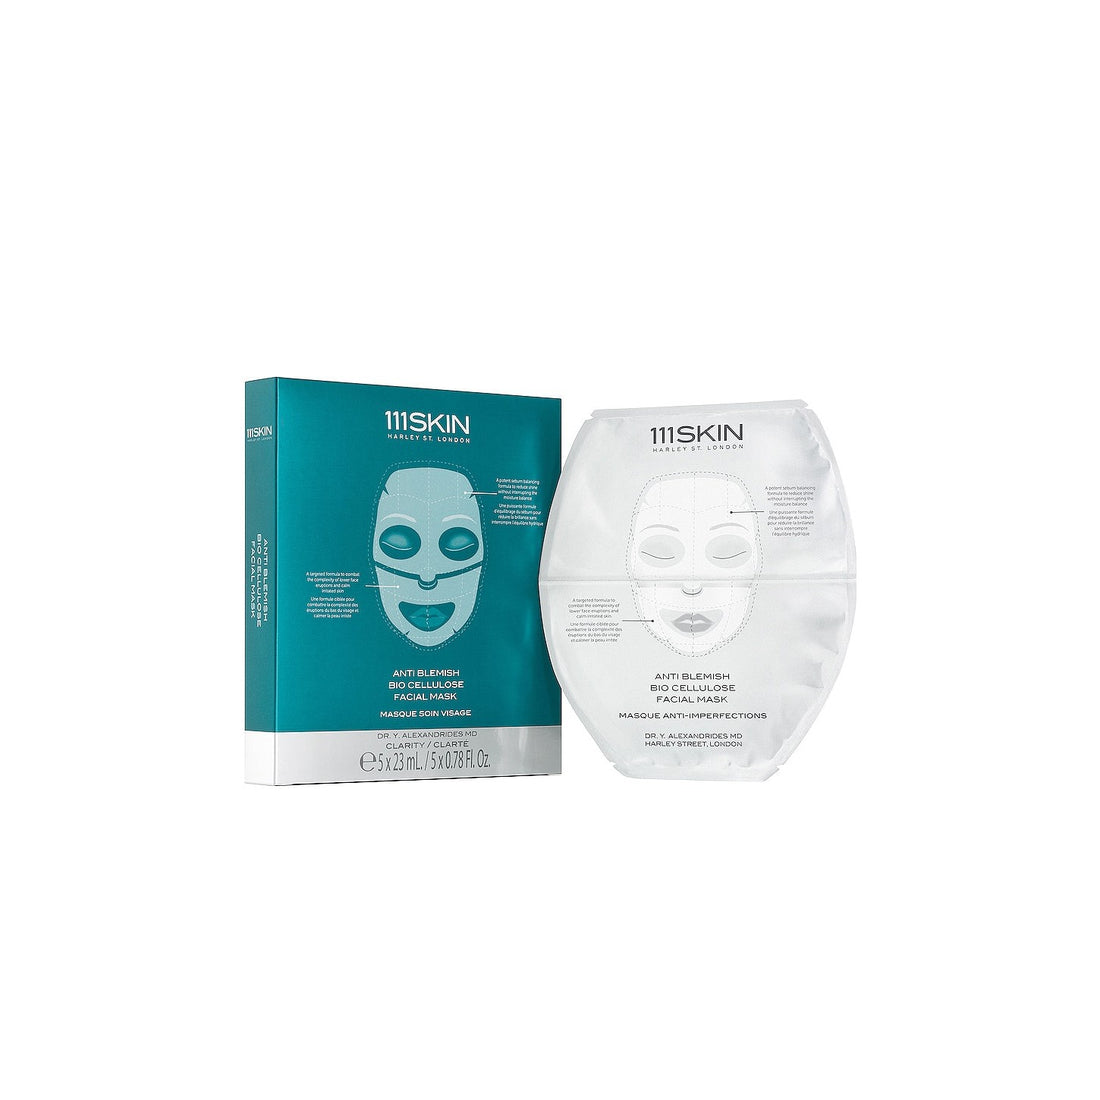 111 SKIN - ANTI BLEMISH - Masque cellulose anti imperfections ( 5 unités )